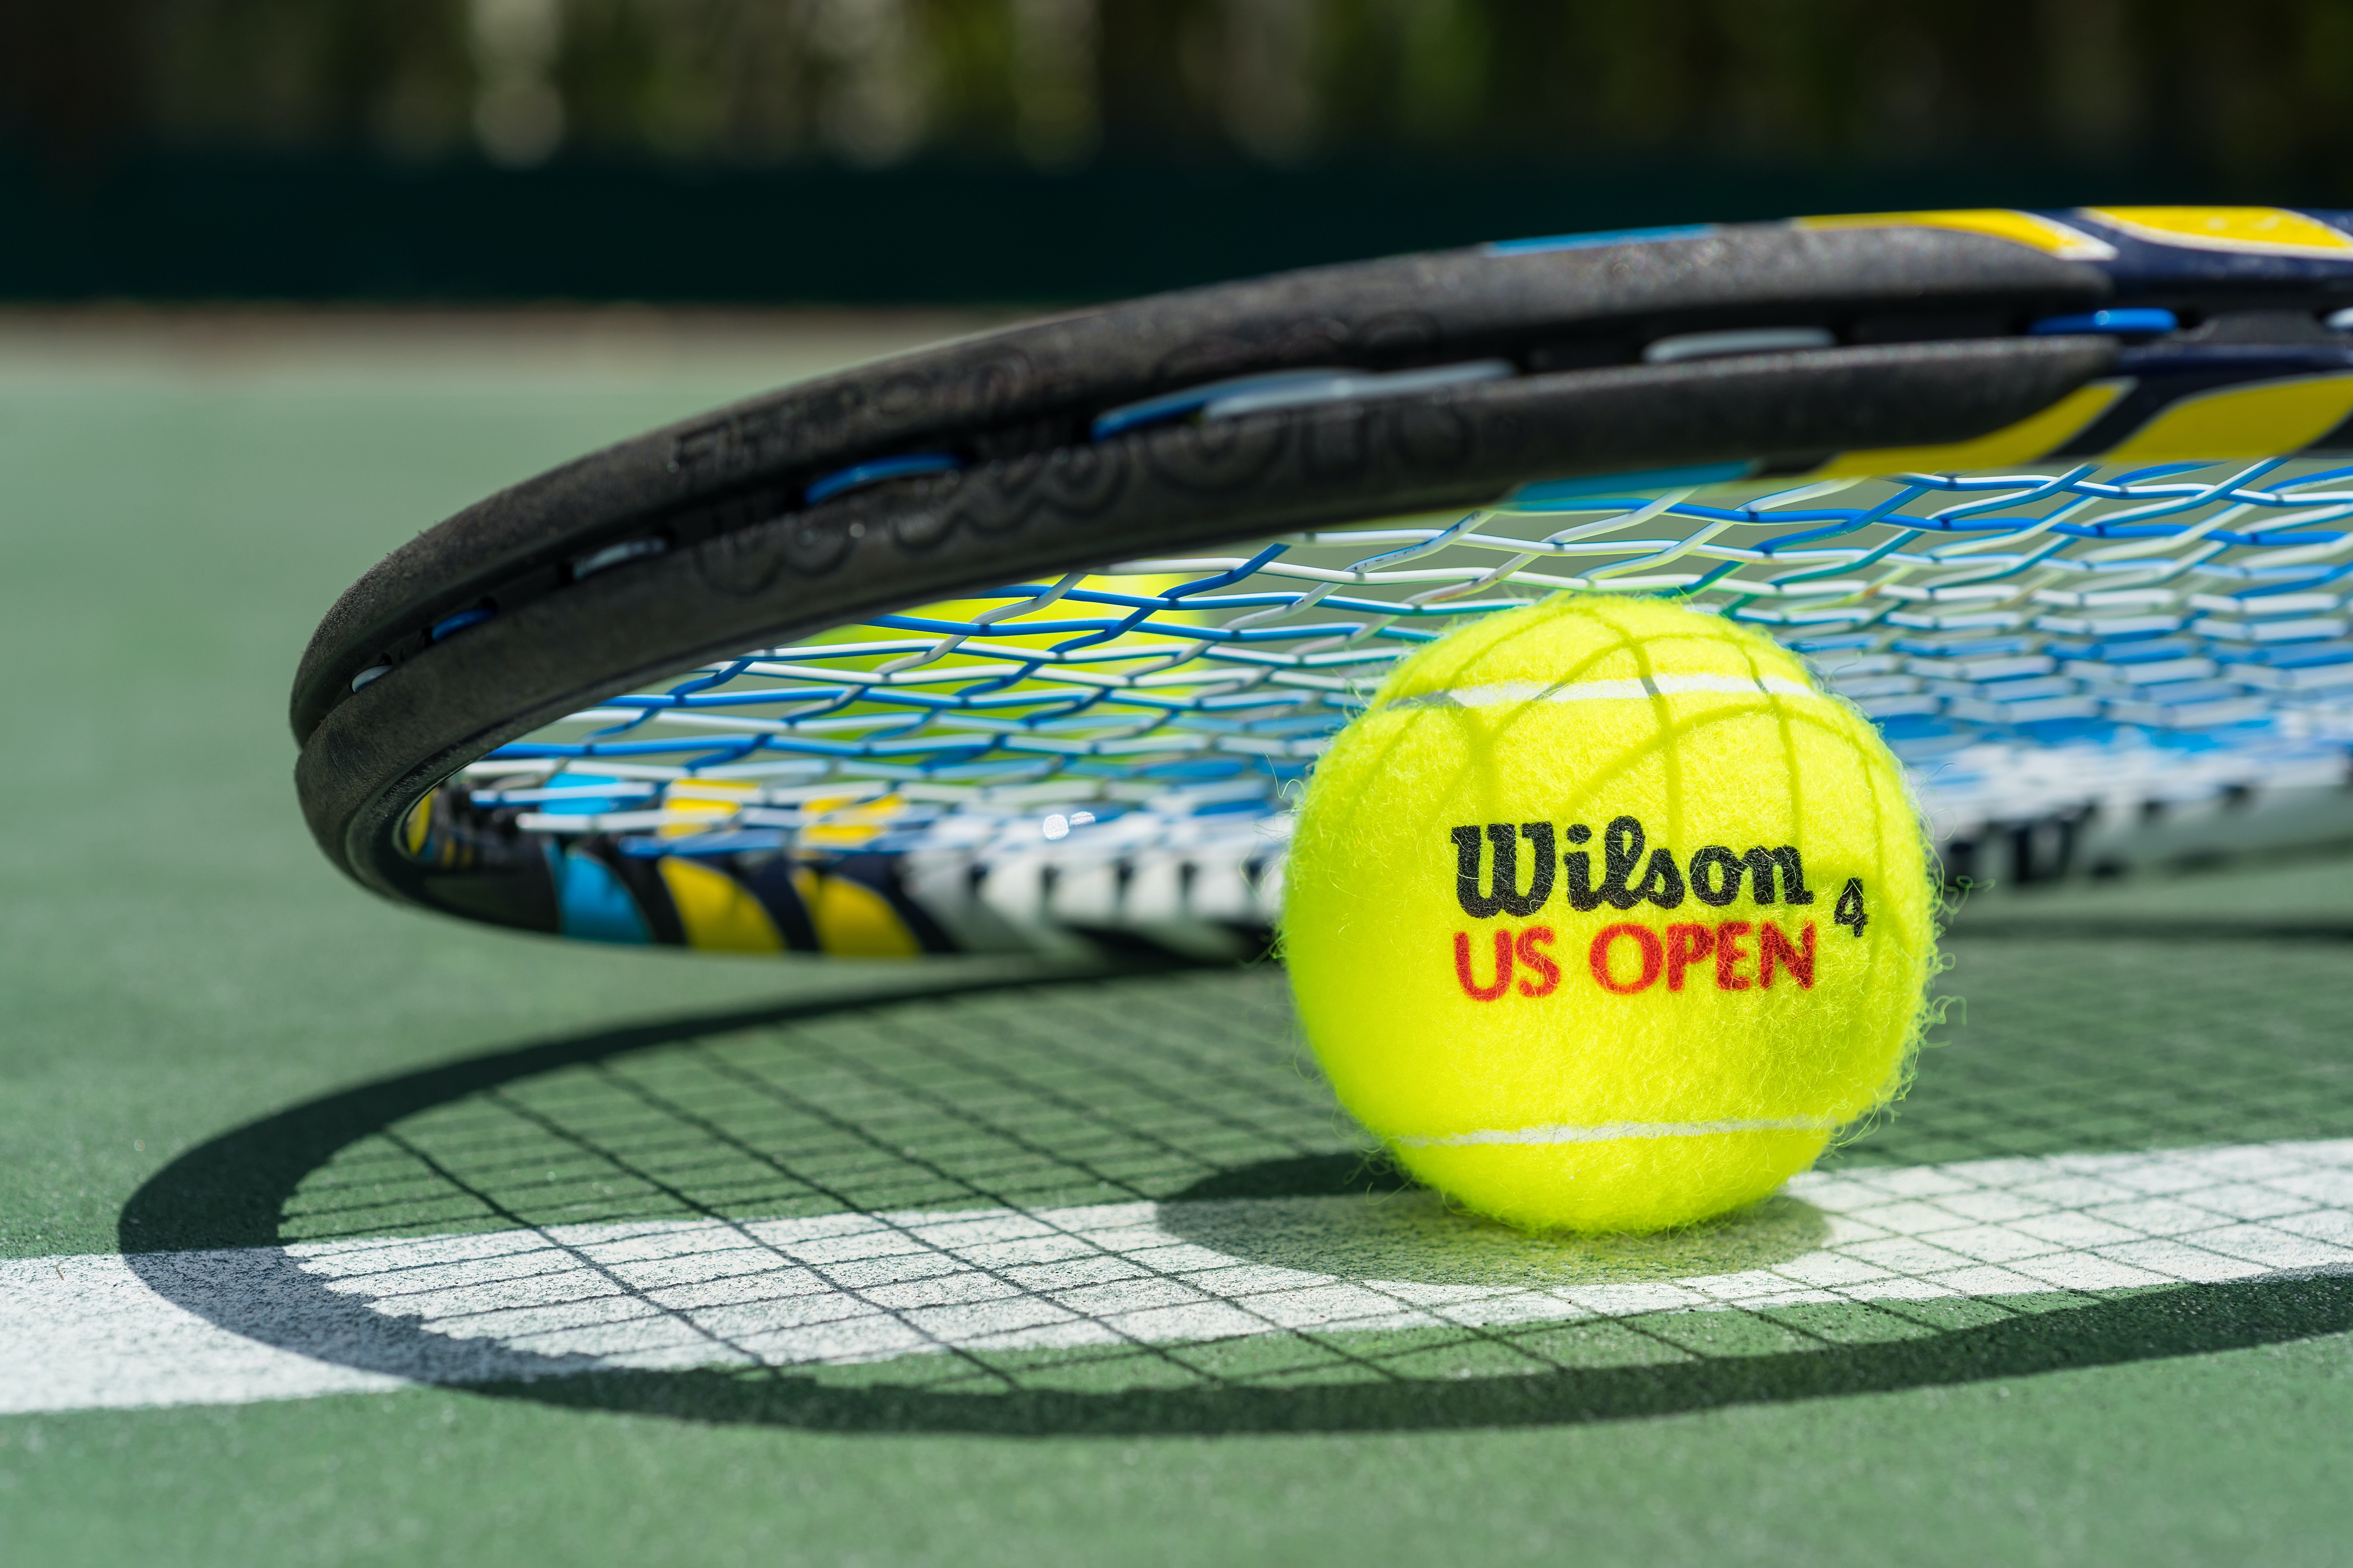 Bestrating Pakket Peuter Chinese Group to Buy Wilson Tennis Racket Maker for $5.2 Billion | BoF